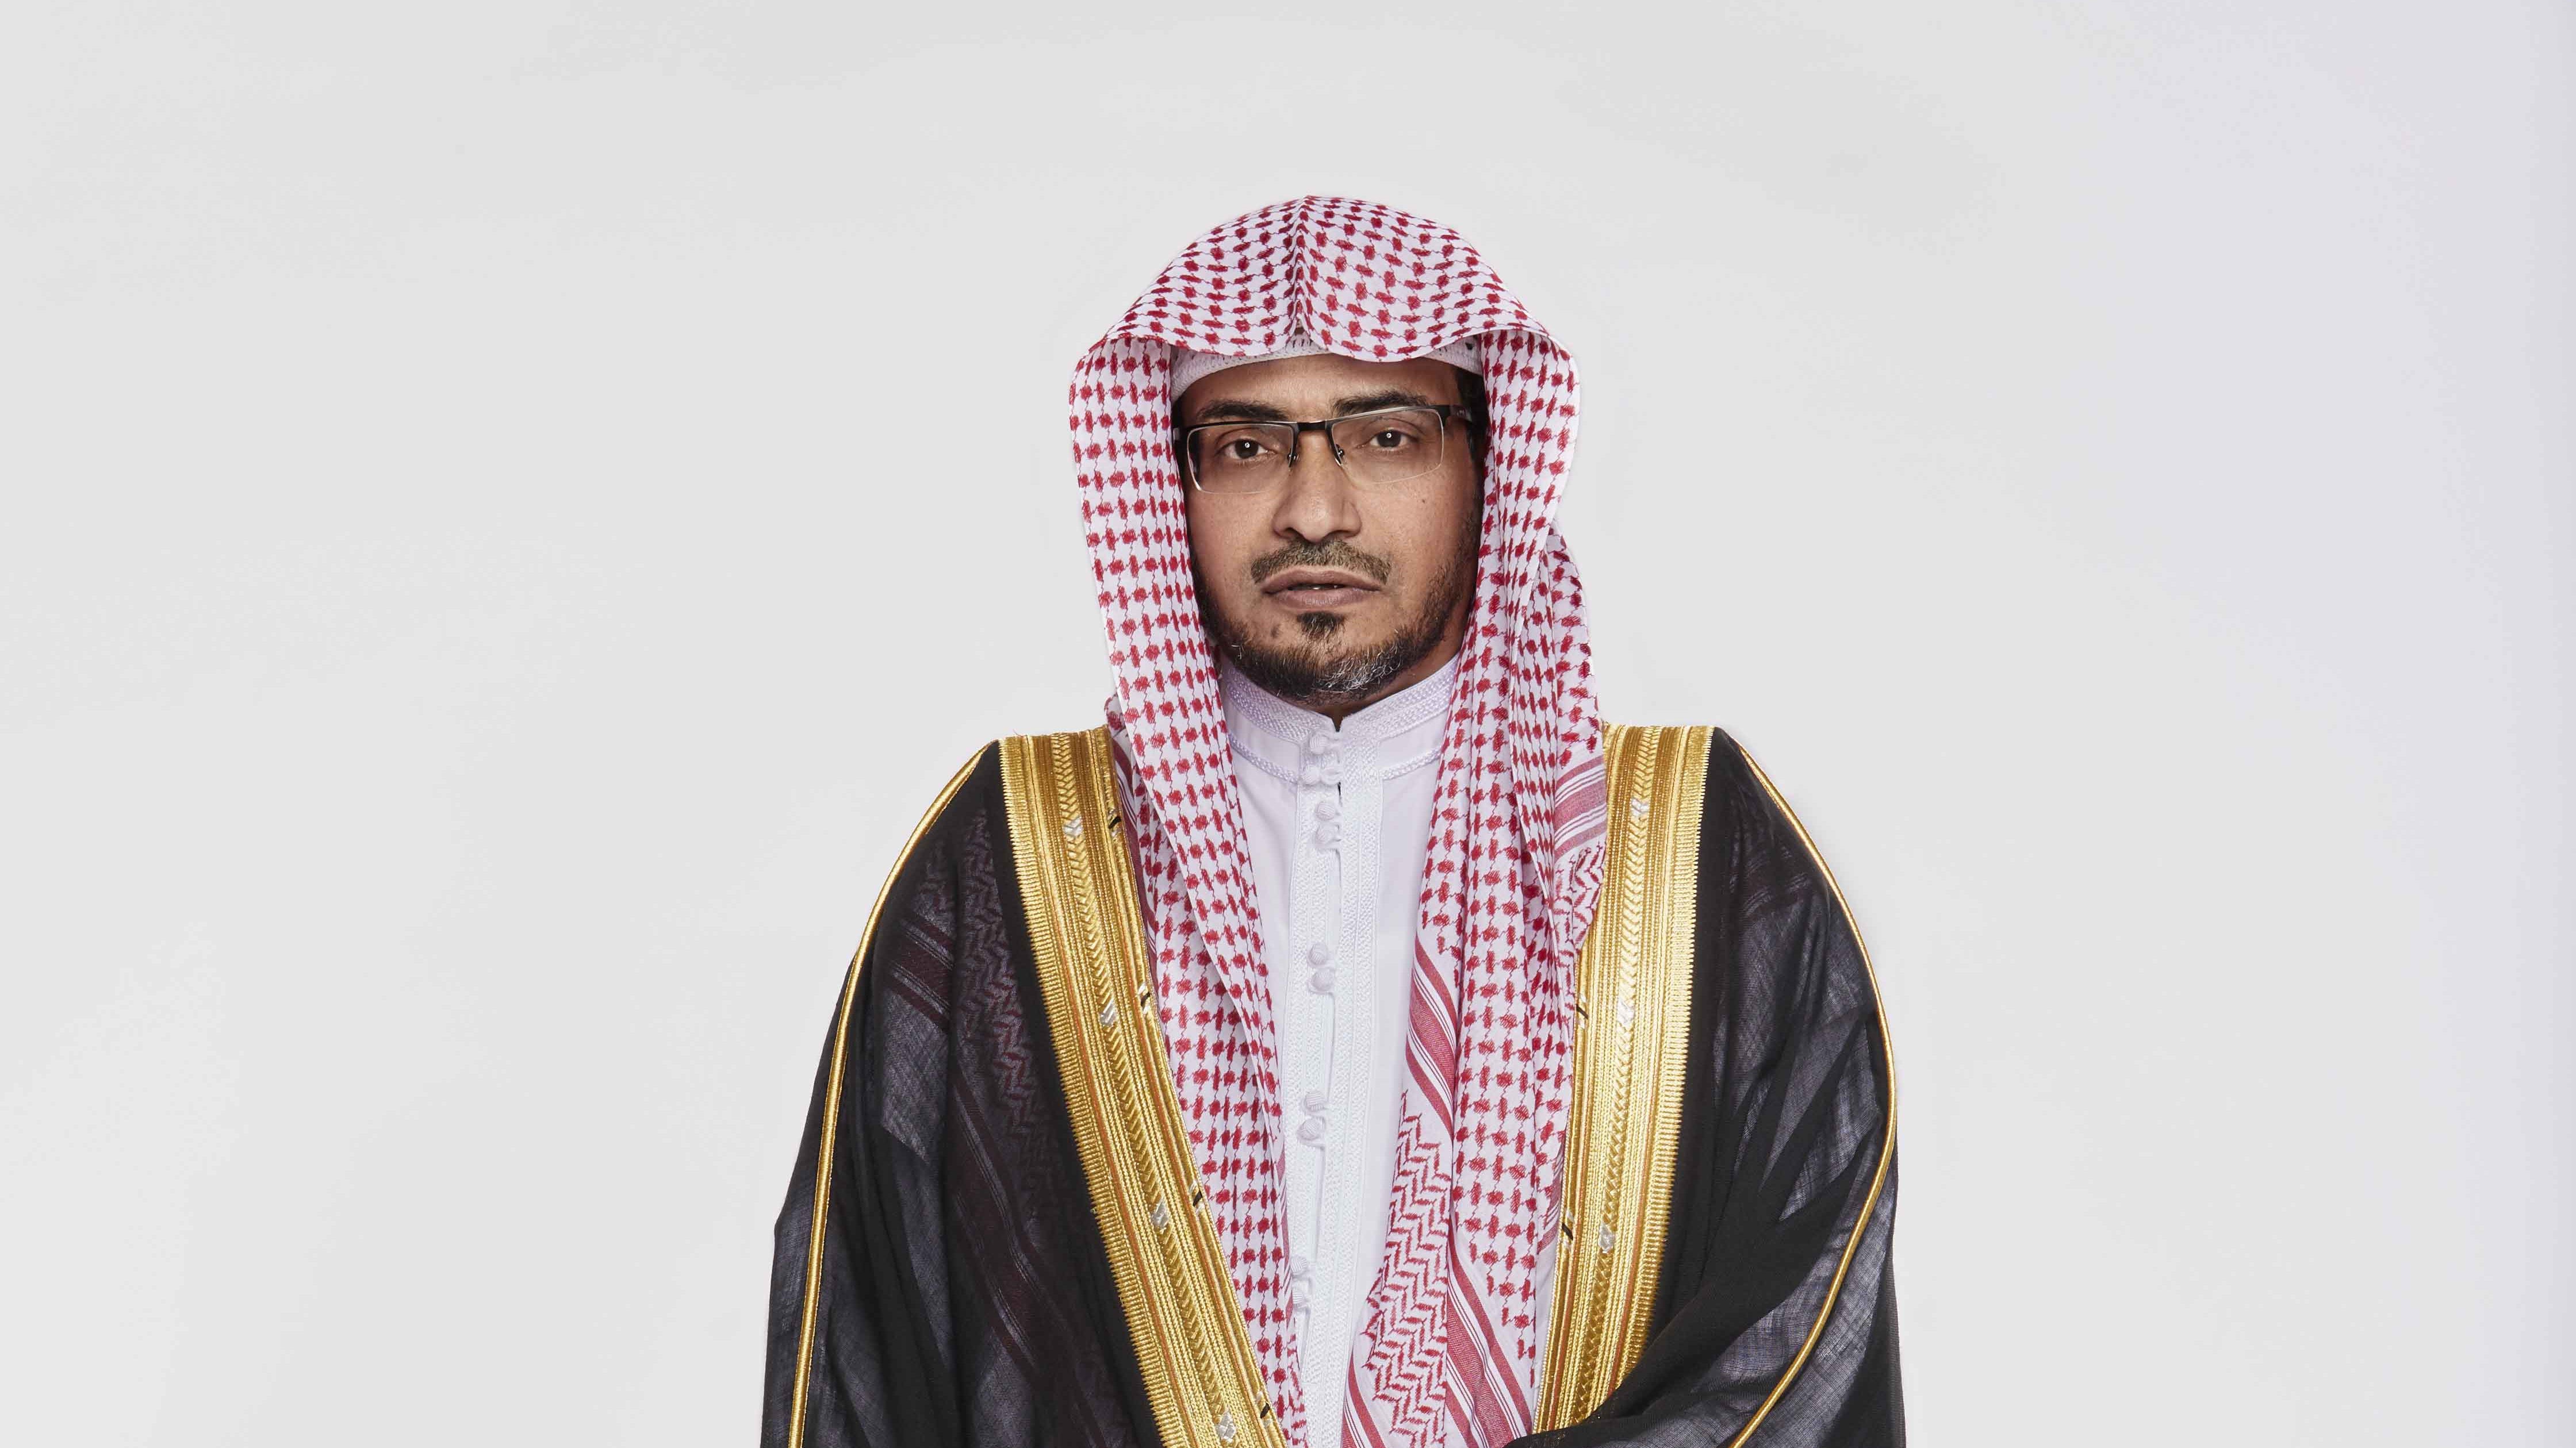 هيئة كبار العلماء في السعودية تُعلق على الدعوة لإنشاء مذهب فقهي إسلامي جديد